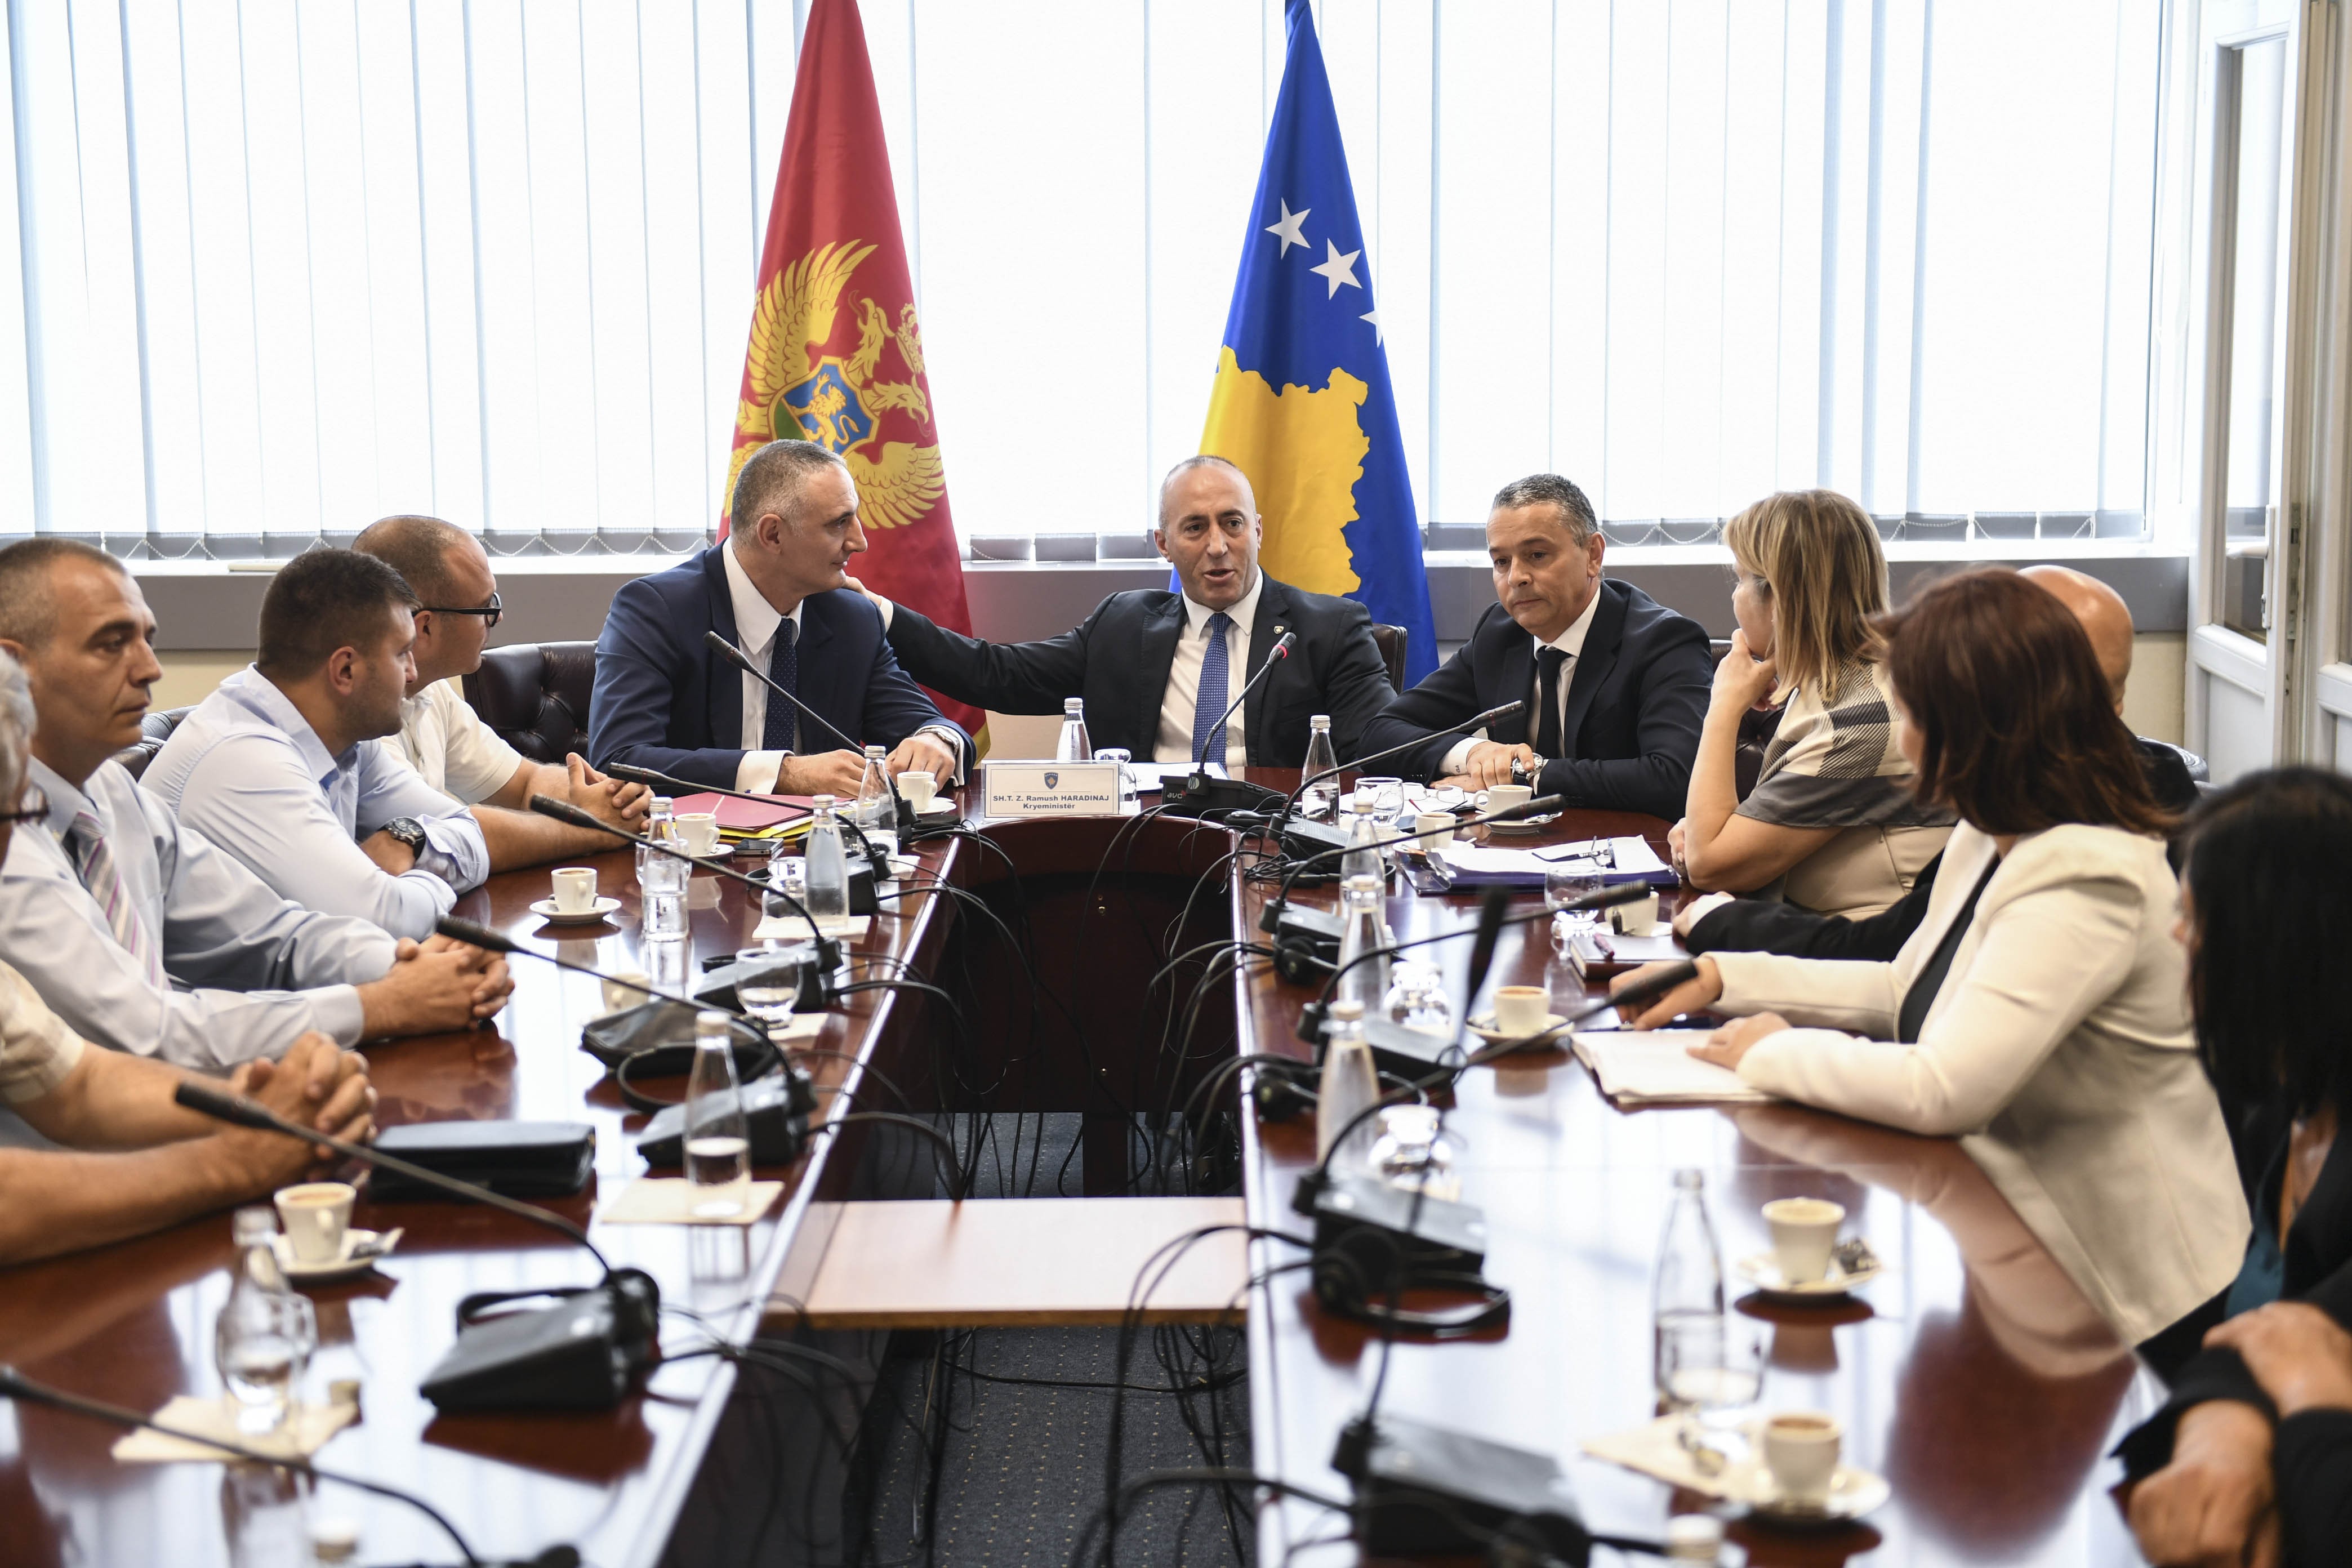 Kryeministri Haradinaj takoi përfaqësues të komunitetit malazez të Kosovës